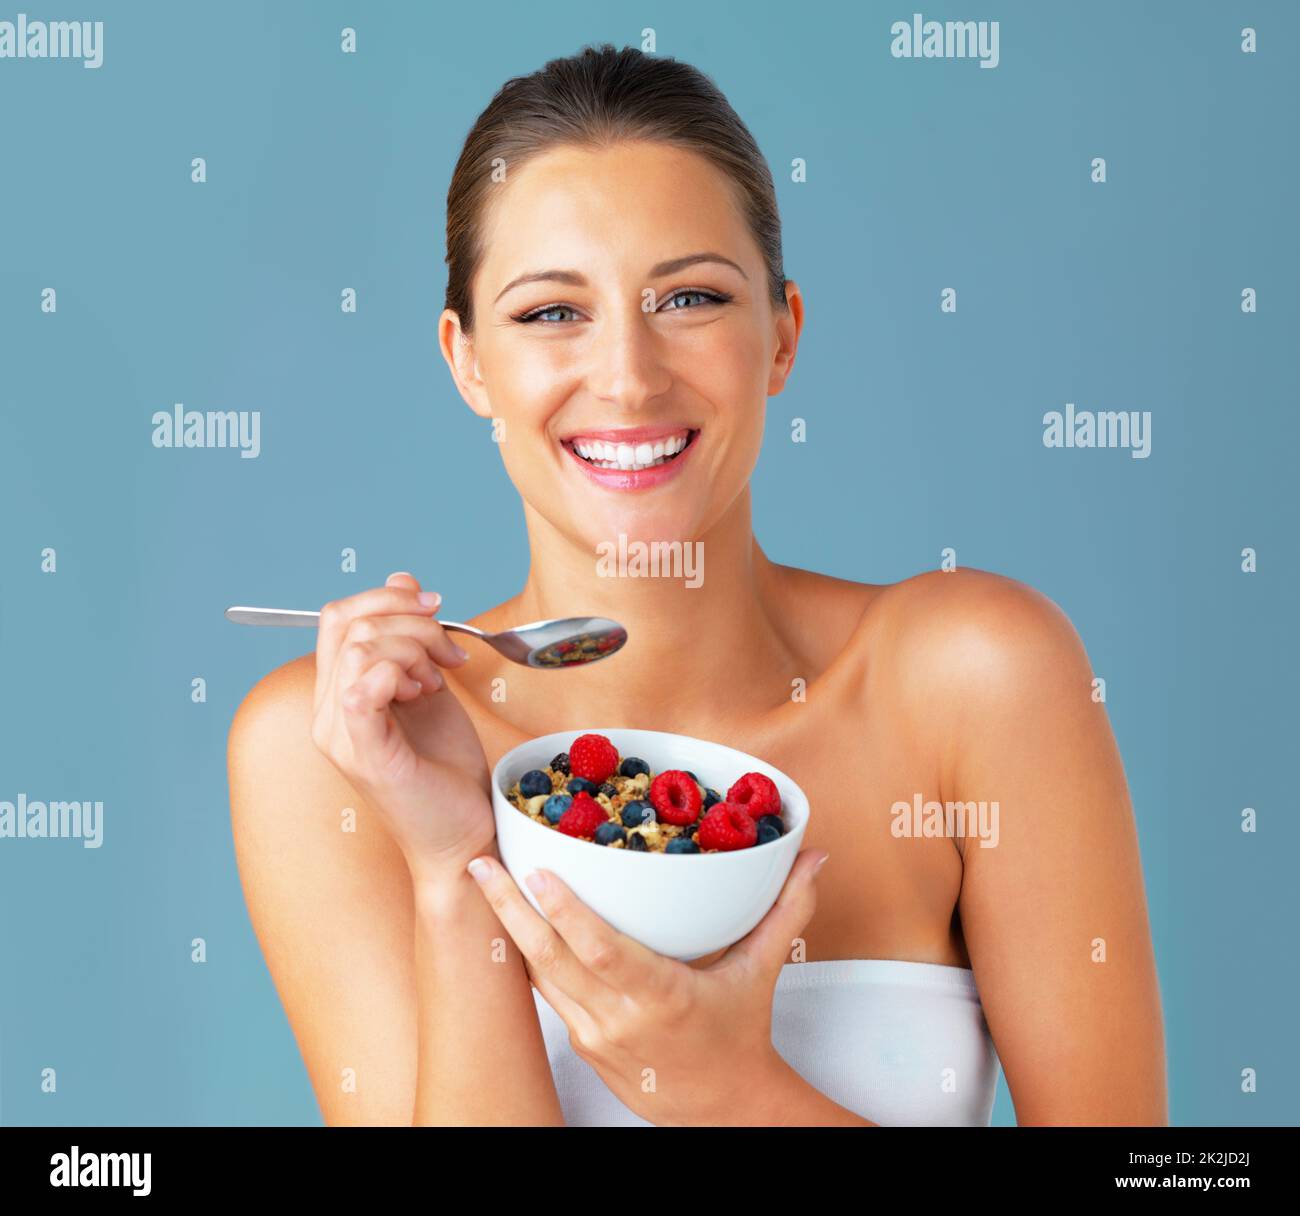 Gesundheit und Glück gehen Hand in Hand. Studioaufnahme einer attraktiven jungen Frau, die vor blauem Hintergrund eine Schale Müsli und Obst isst. Stockfoto